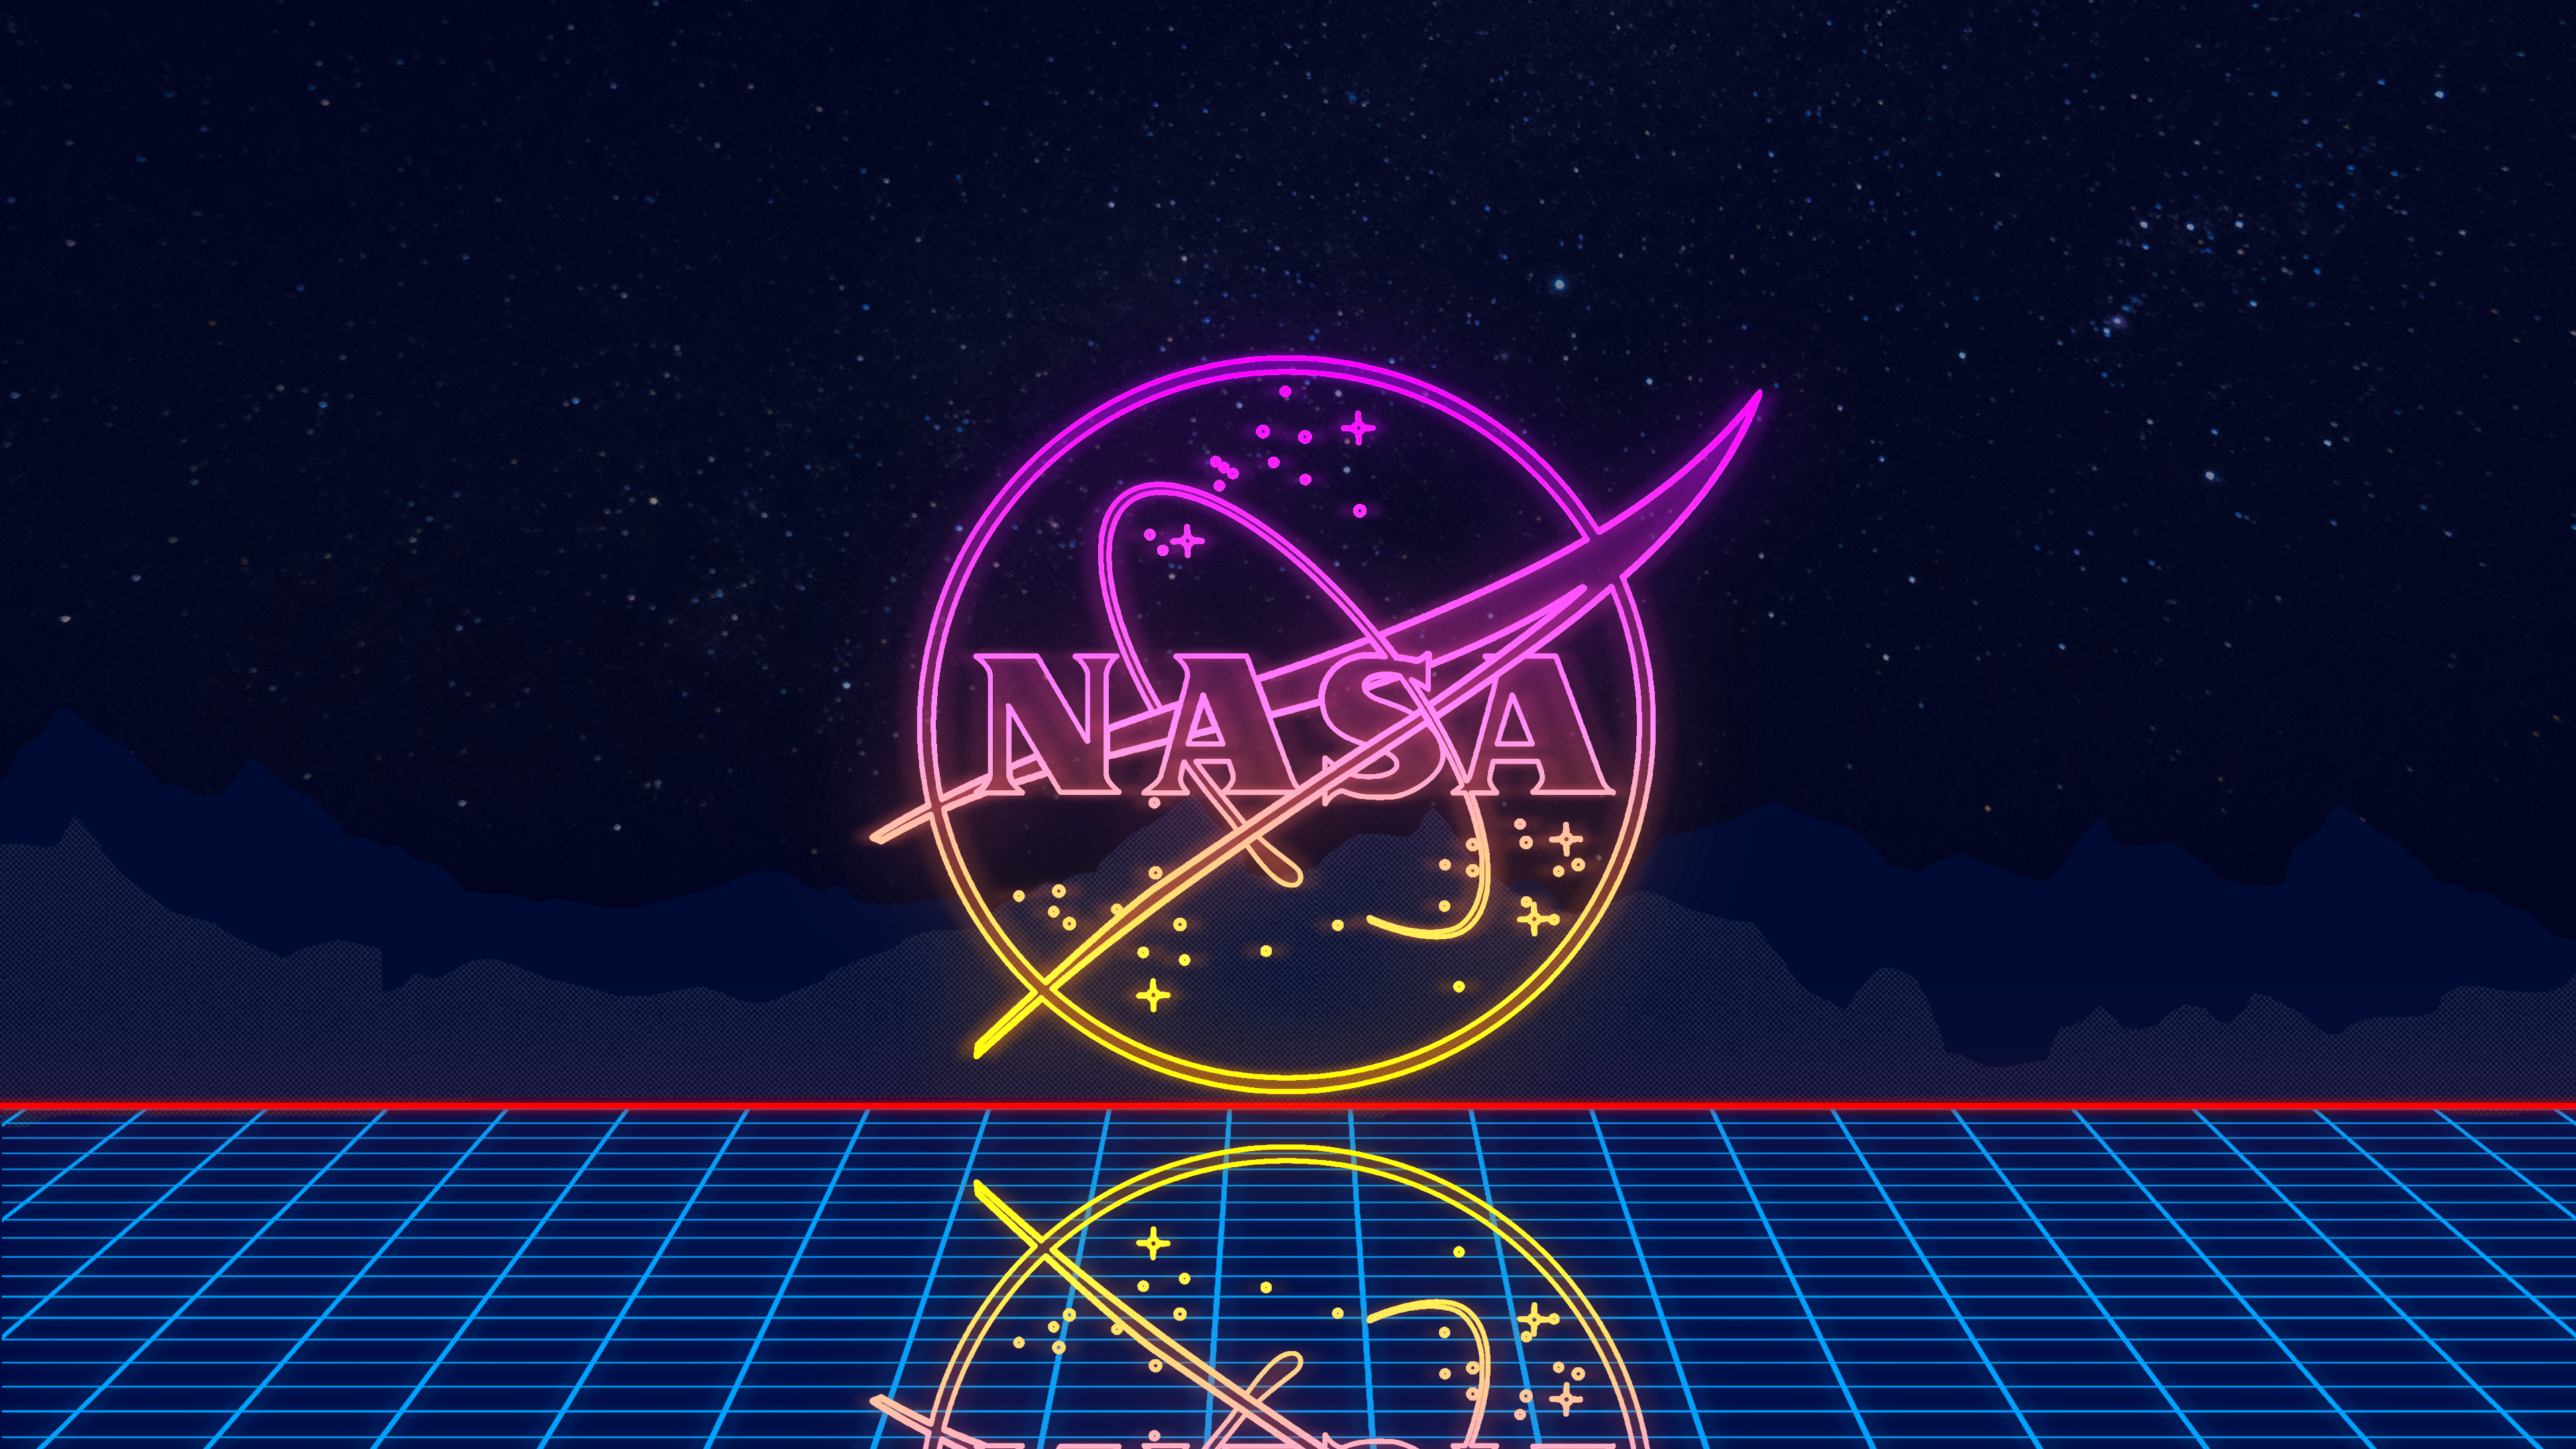 3840x2160 Outrun NASA Wallpaper [3840 x 2160] : r/nasa